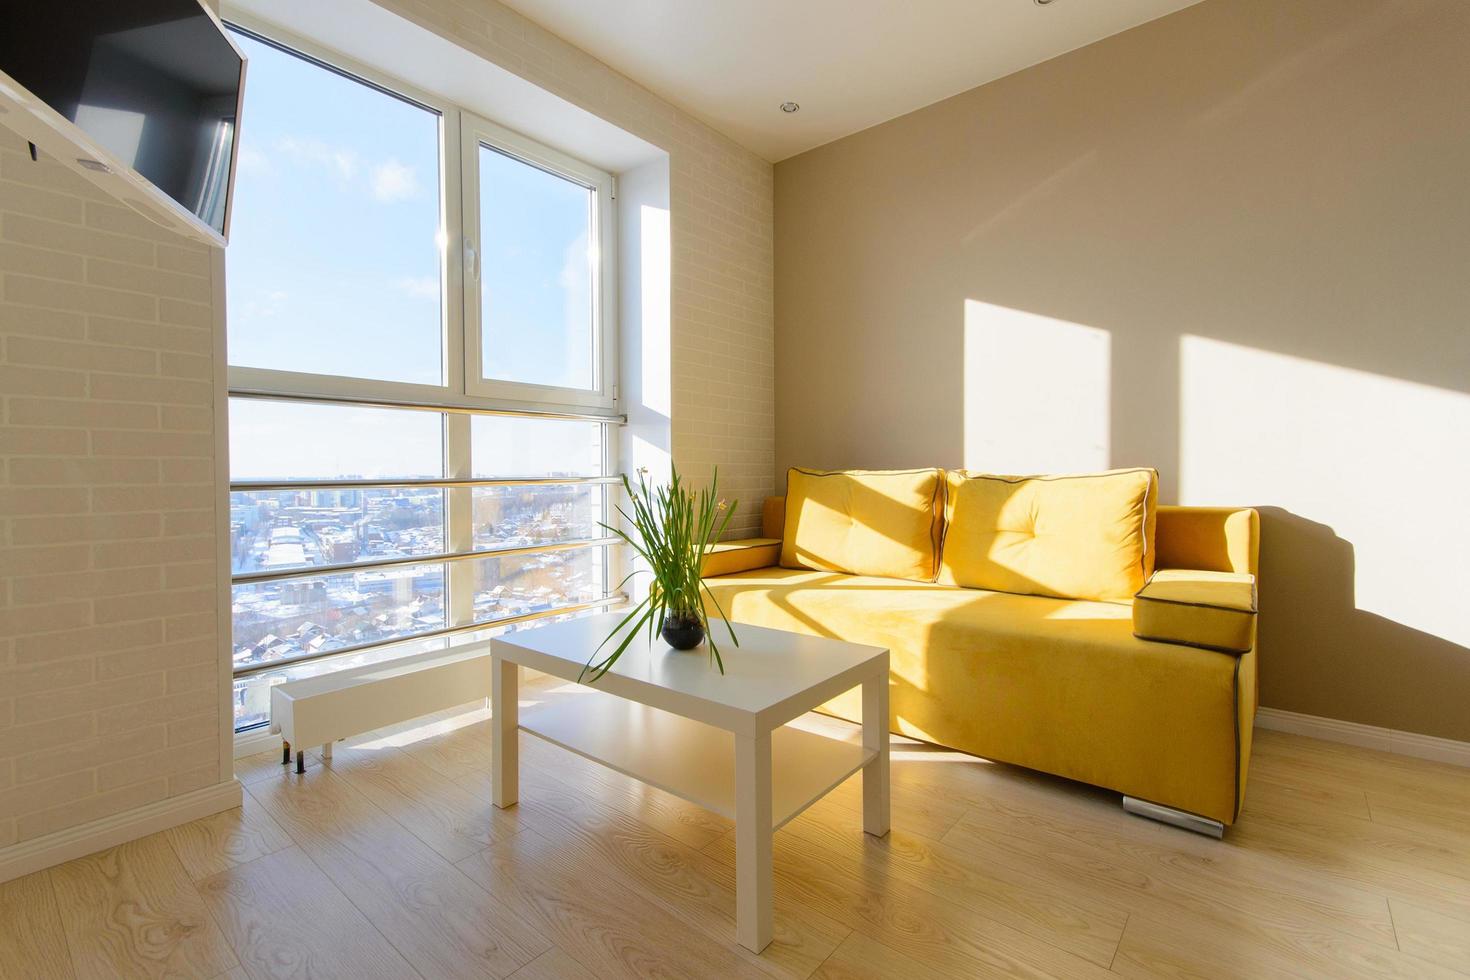 modern mysig lägenhetsinredning, vardagsrum med gul soffa, vitt soffbord och tv på väggen, panoramafönster med vacker utsikt mot staden. foto